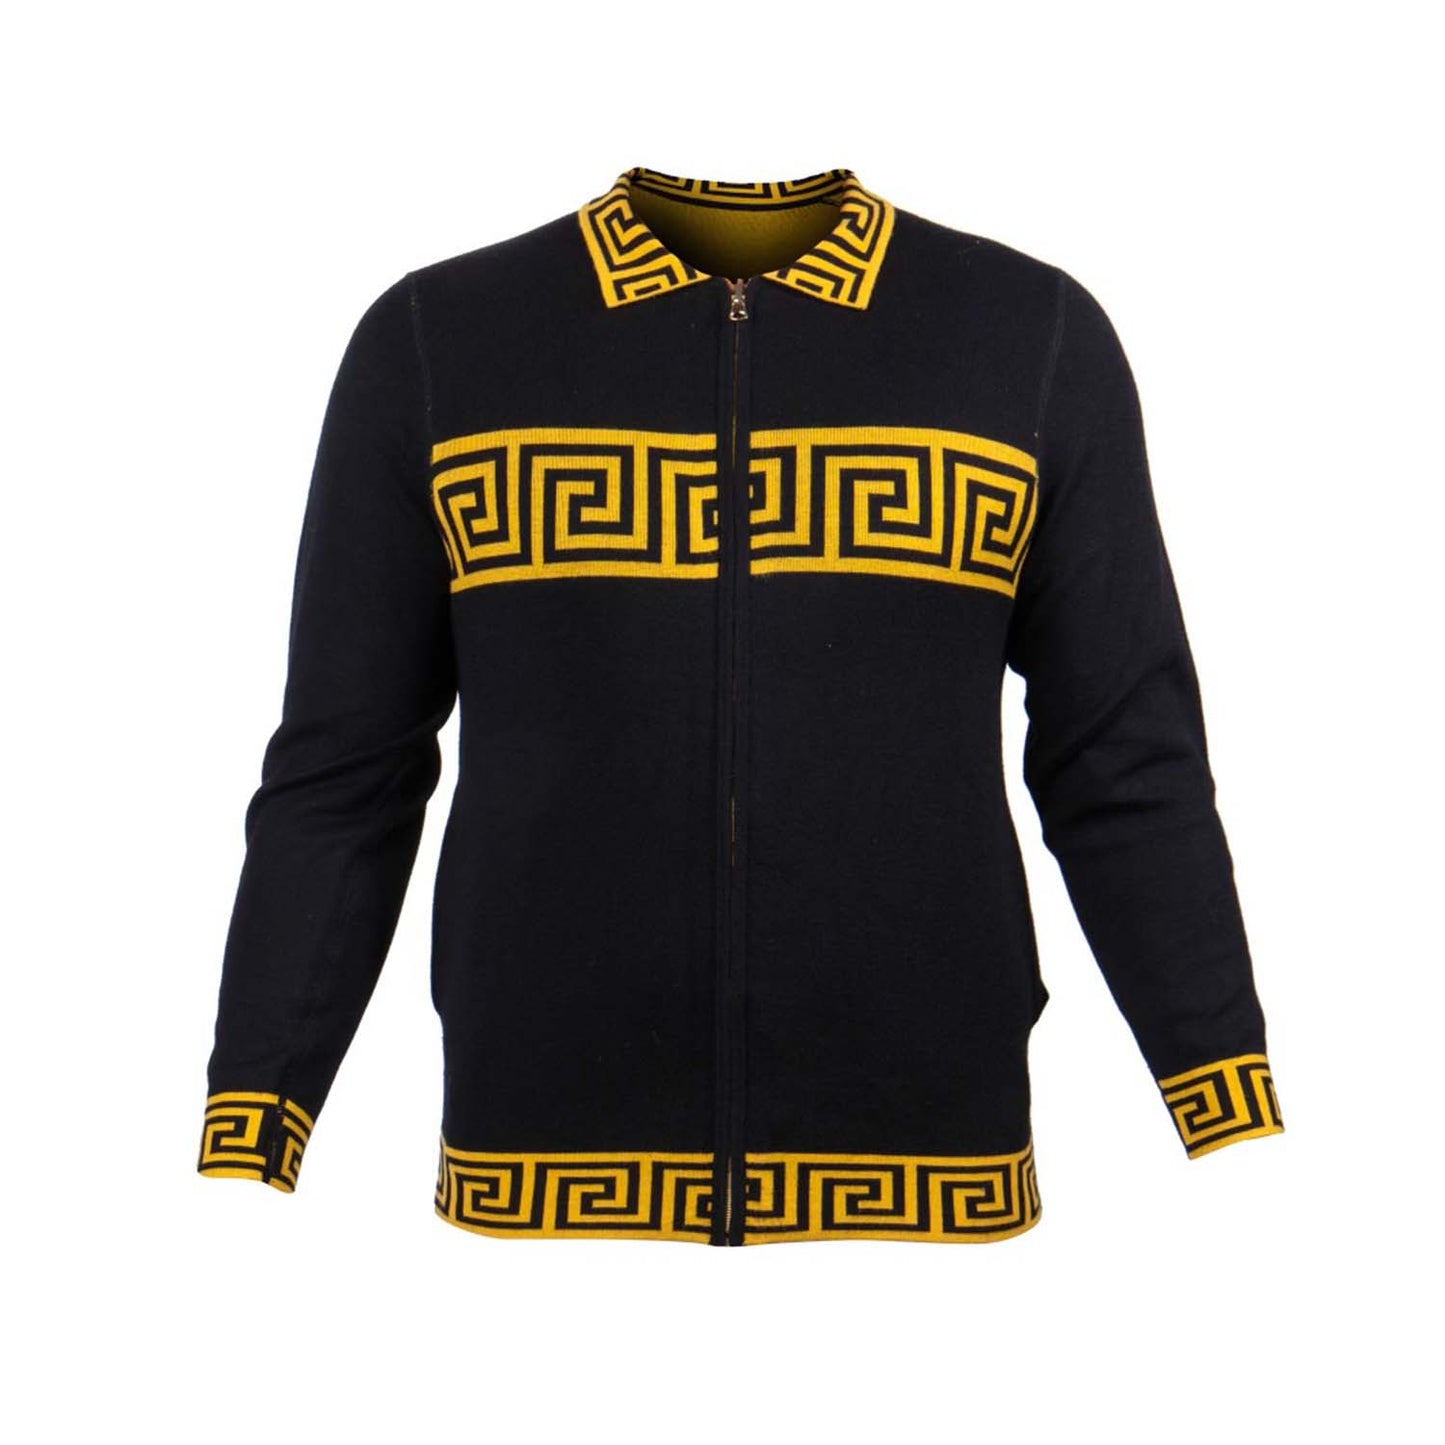 Prestige Zip Up Sweater 399